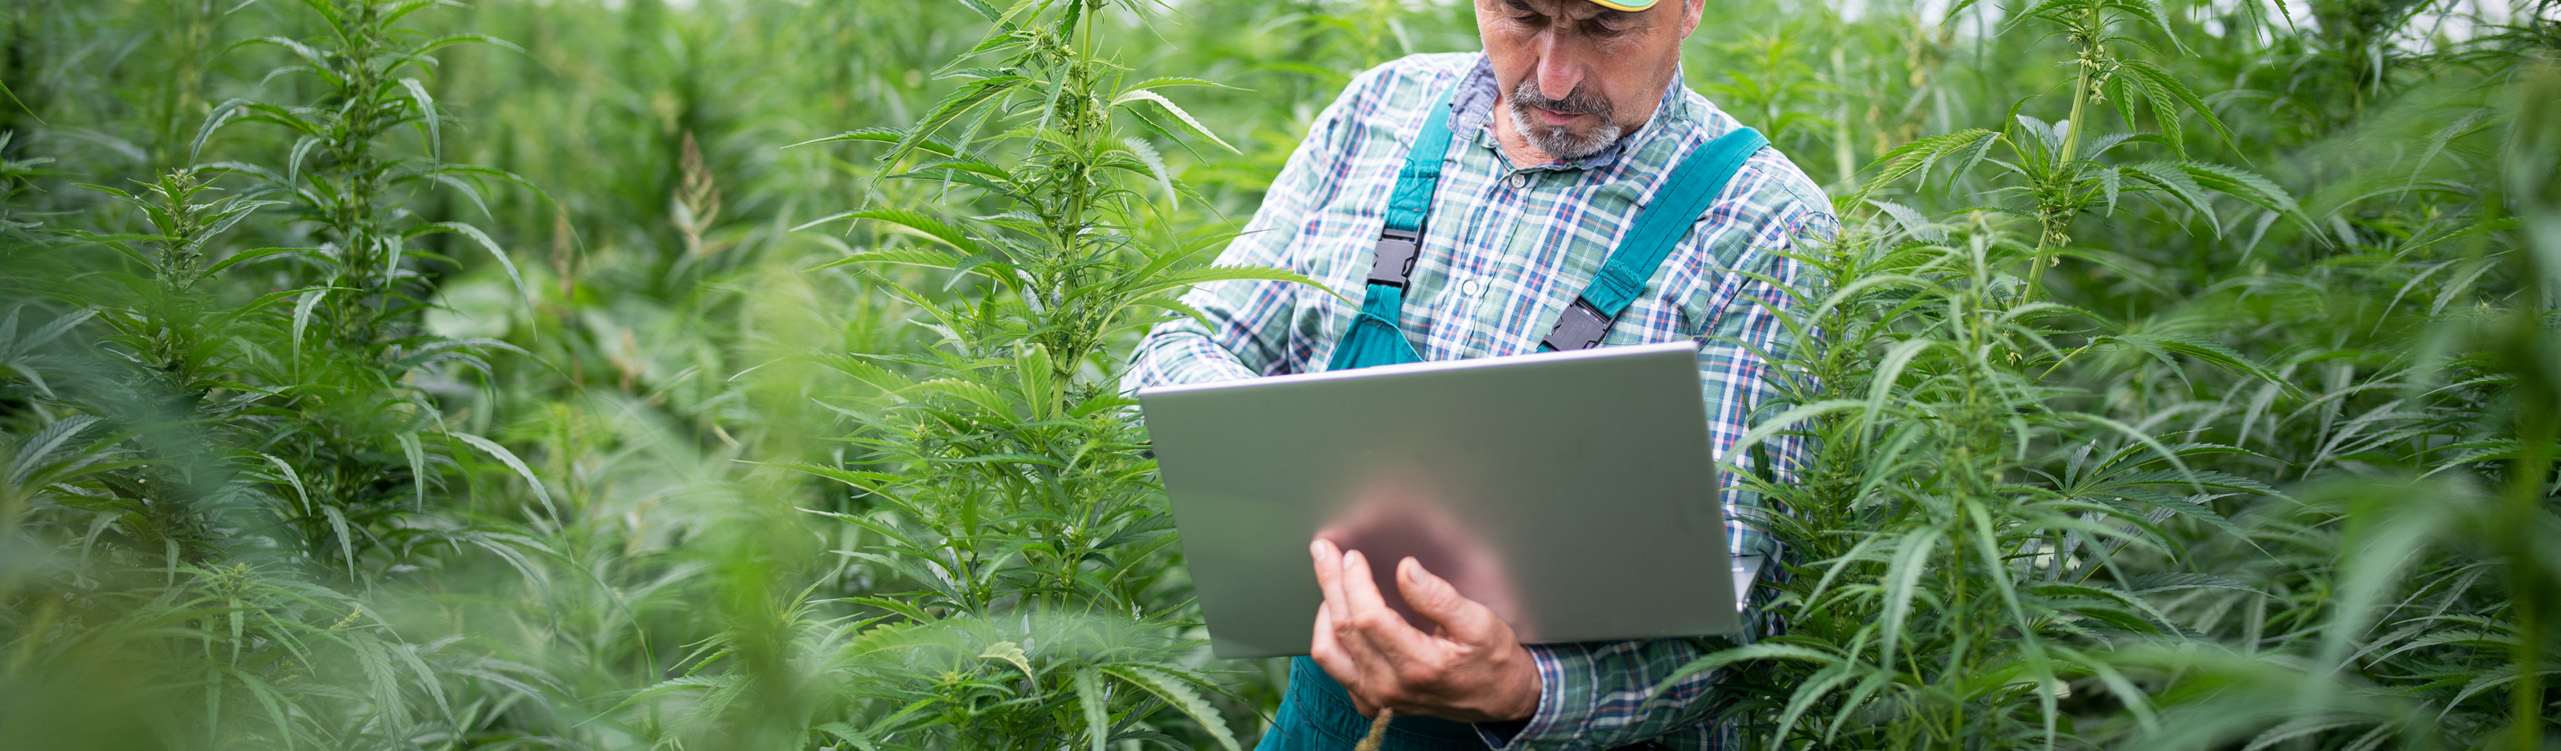 cannabis farmer using a computer